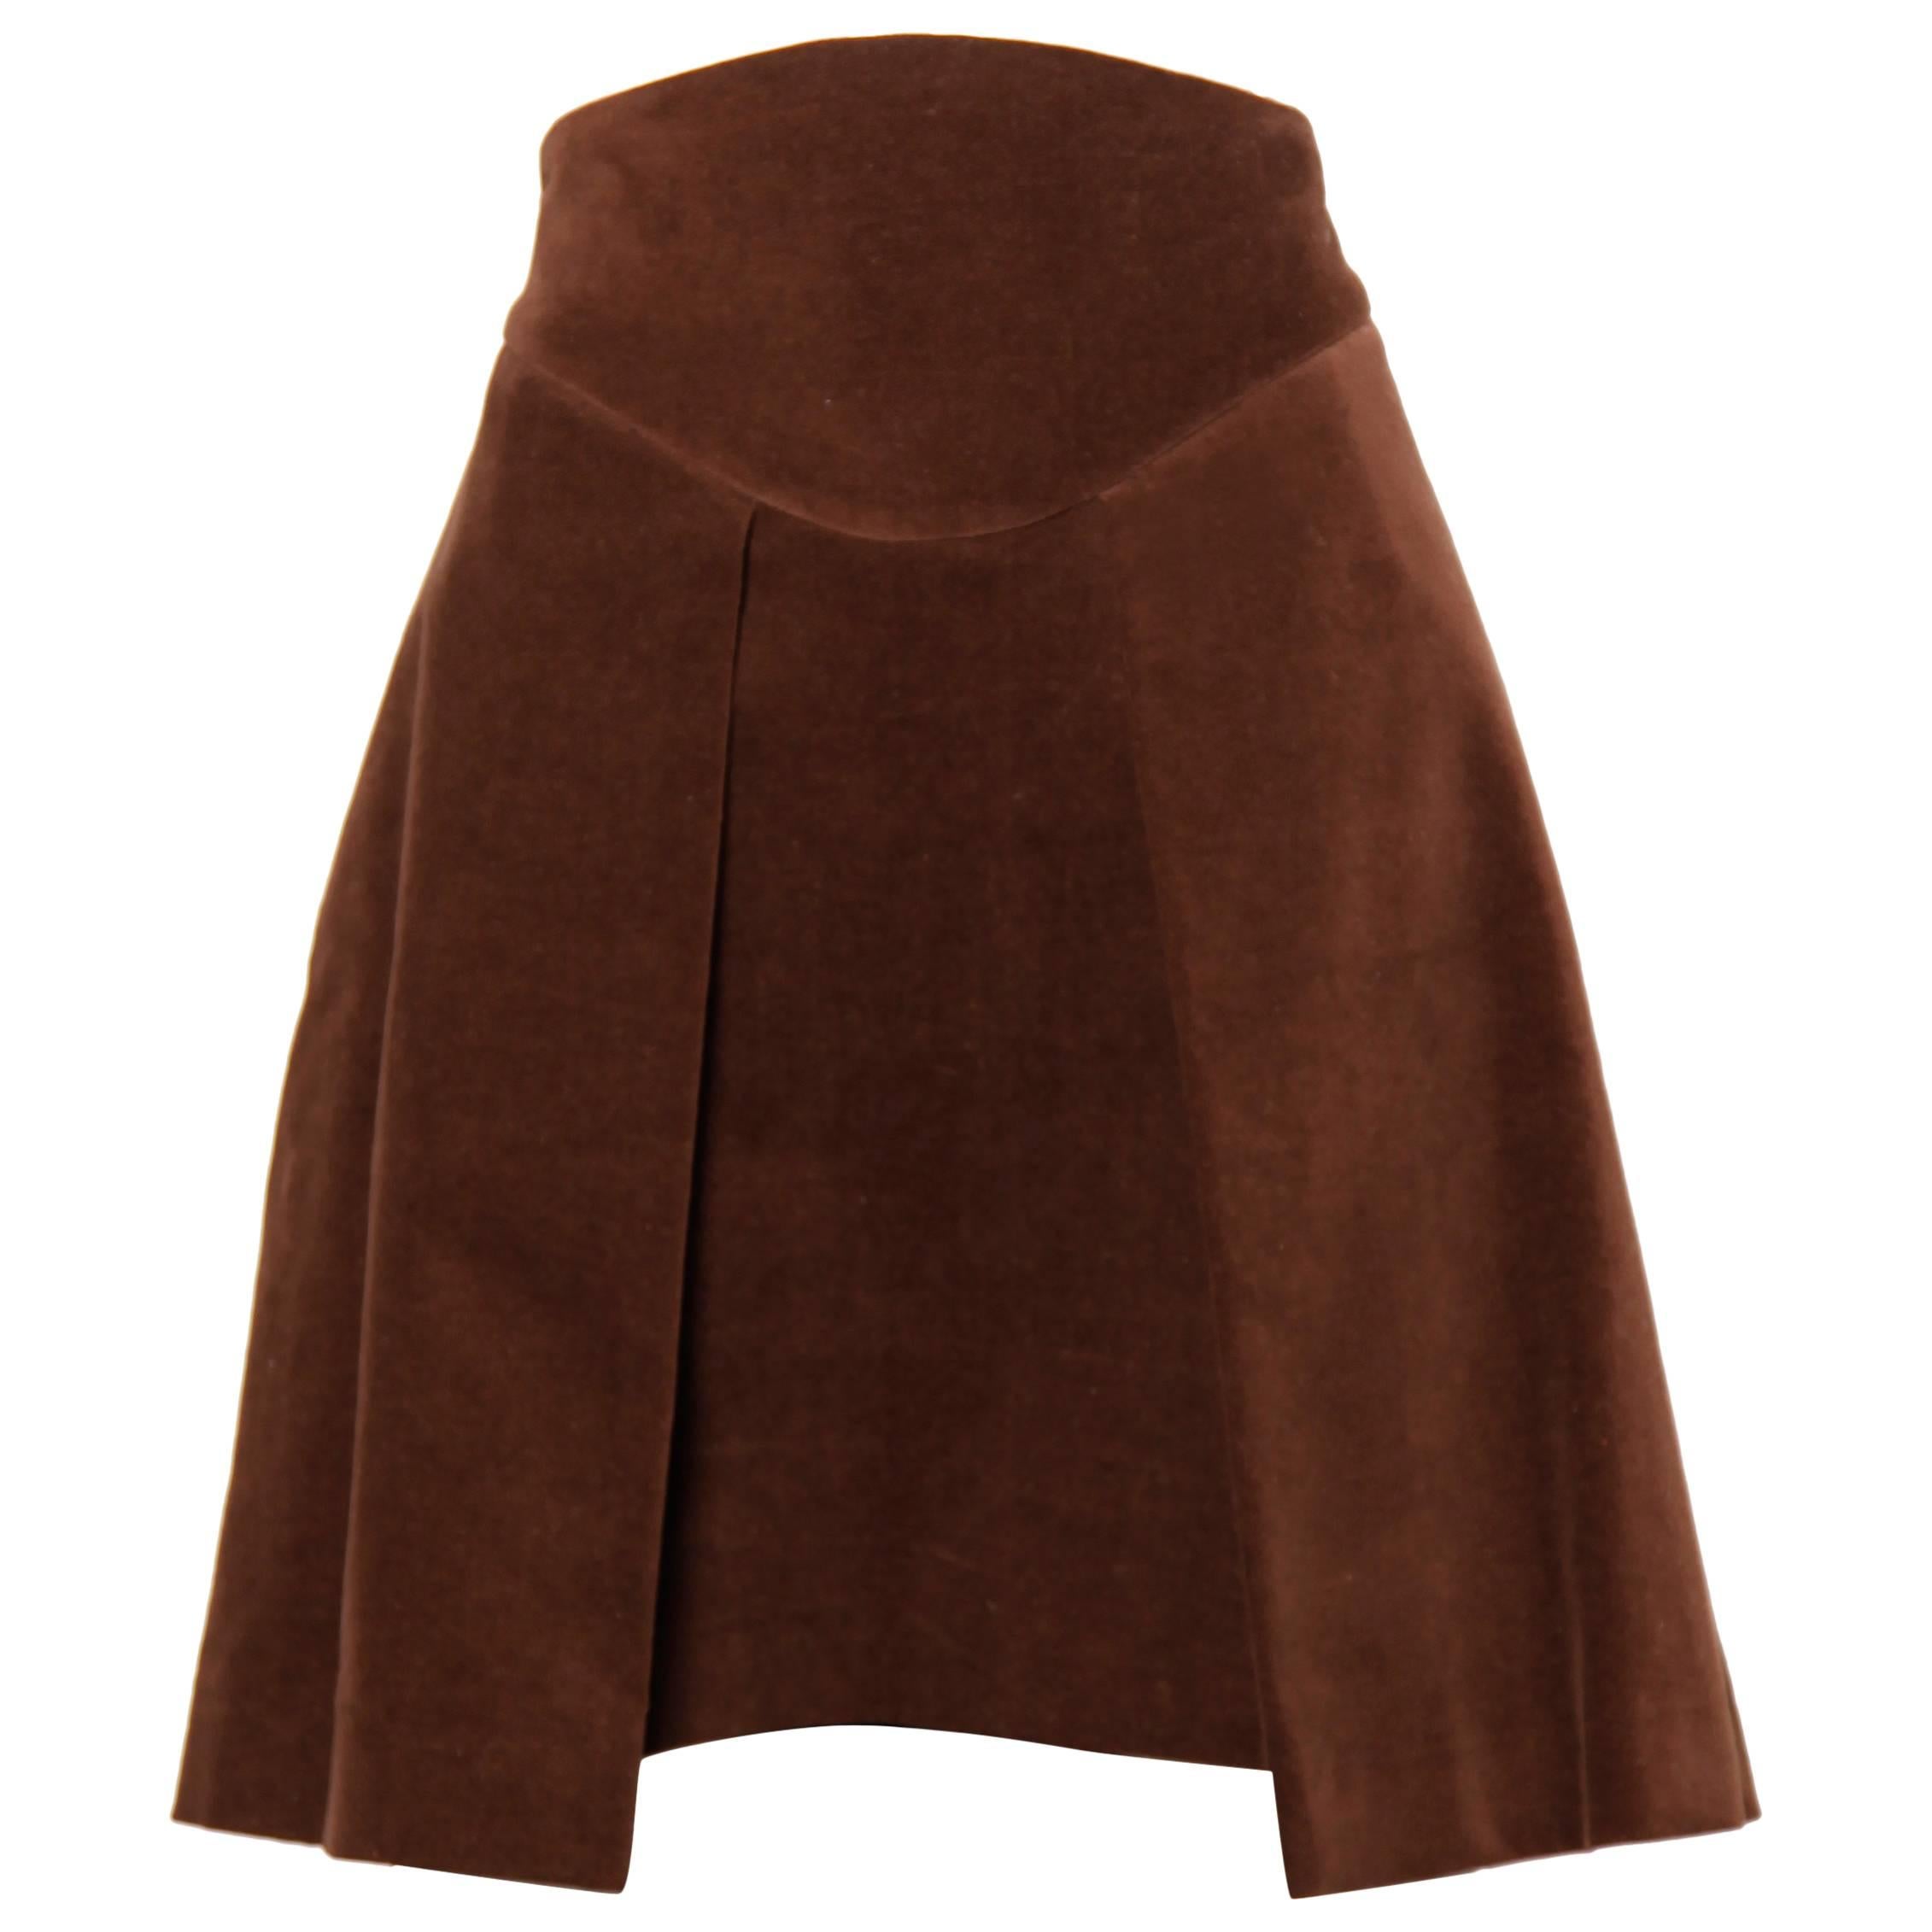 Unworn Vivienne Westwood Anglomania Brown Velvet Skirt with Original Tags 